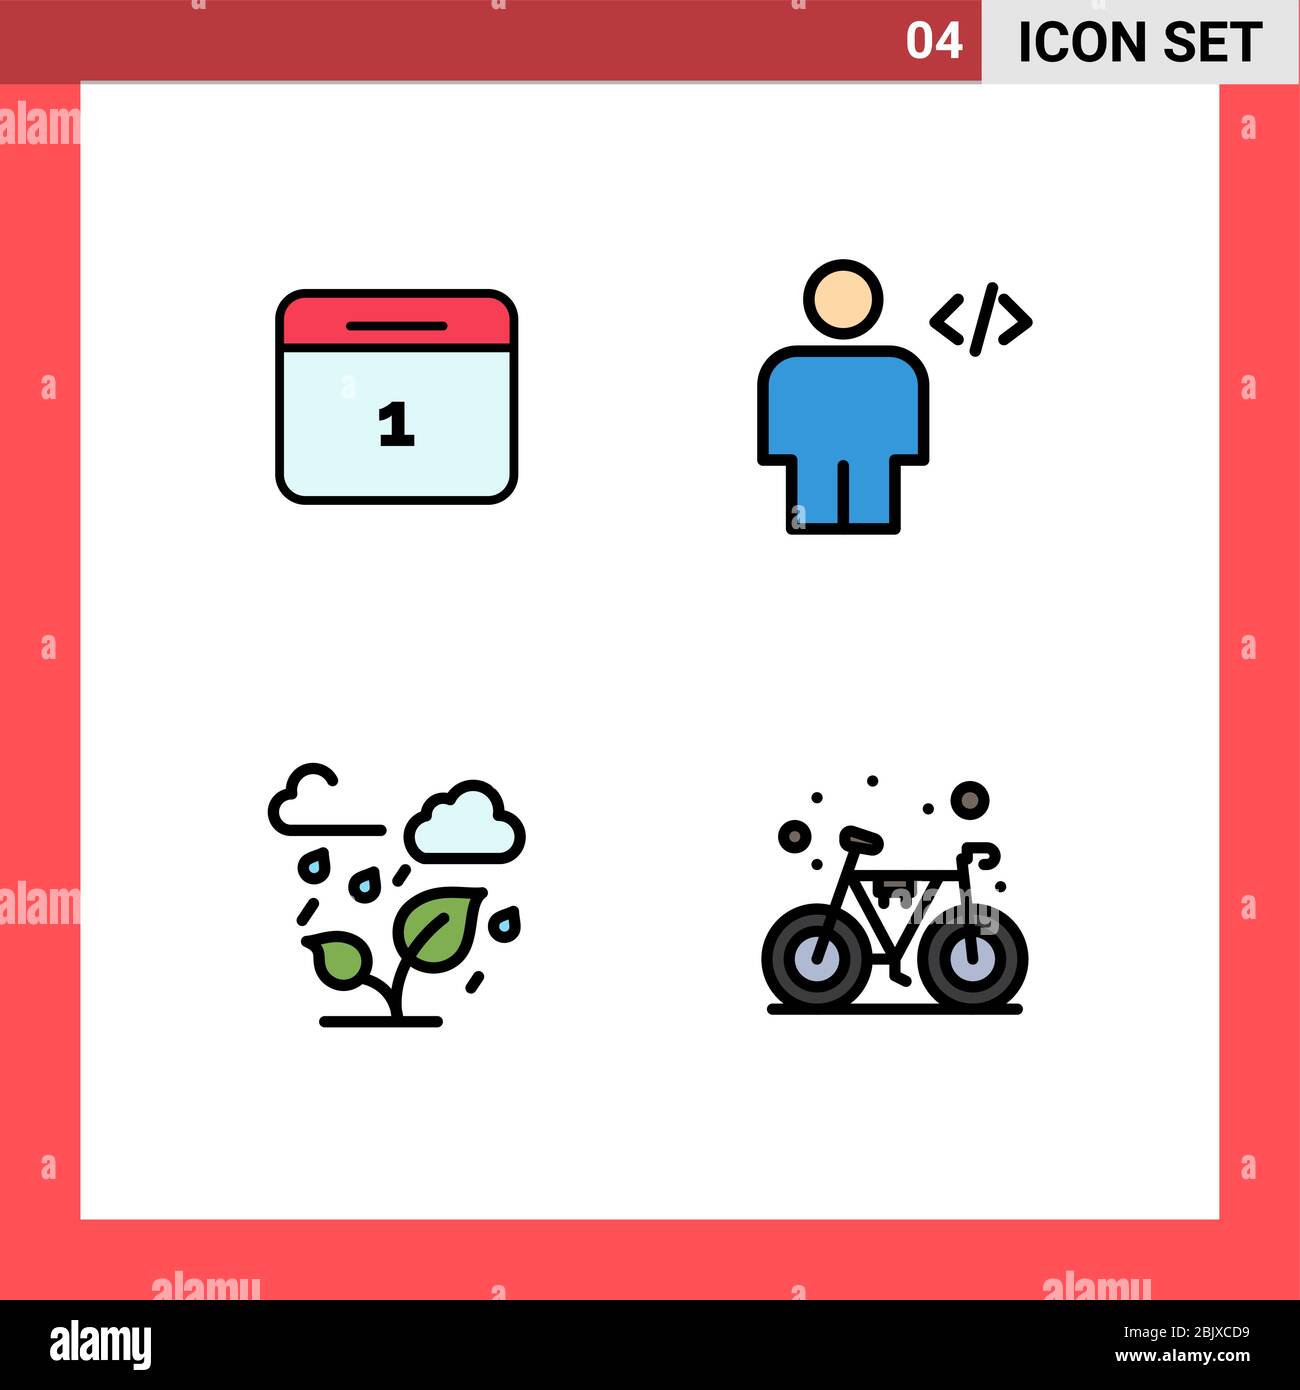 4 interfaccia utente Filledline Flat Color Pack di segni moderni e simboli di calandra, verde, giorno, codice, cloud elementi di progettazione vettoriale modificabile Illustrazione Vettoriale